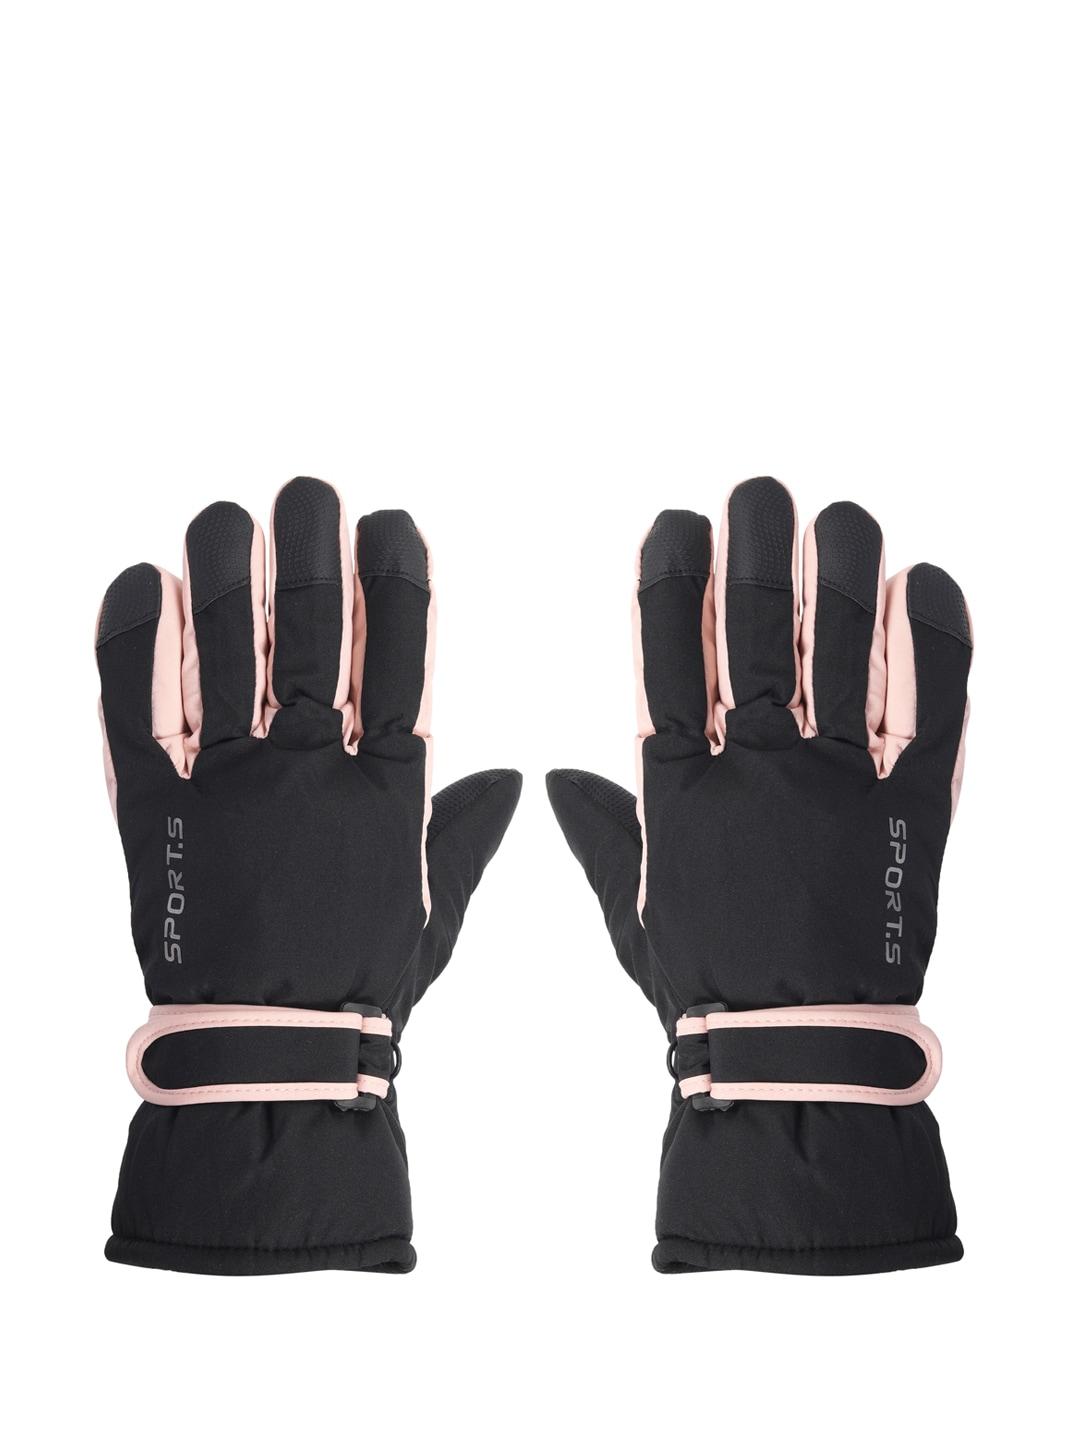 fabseasons black windproof gloves